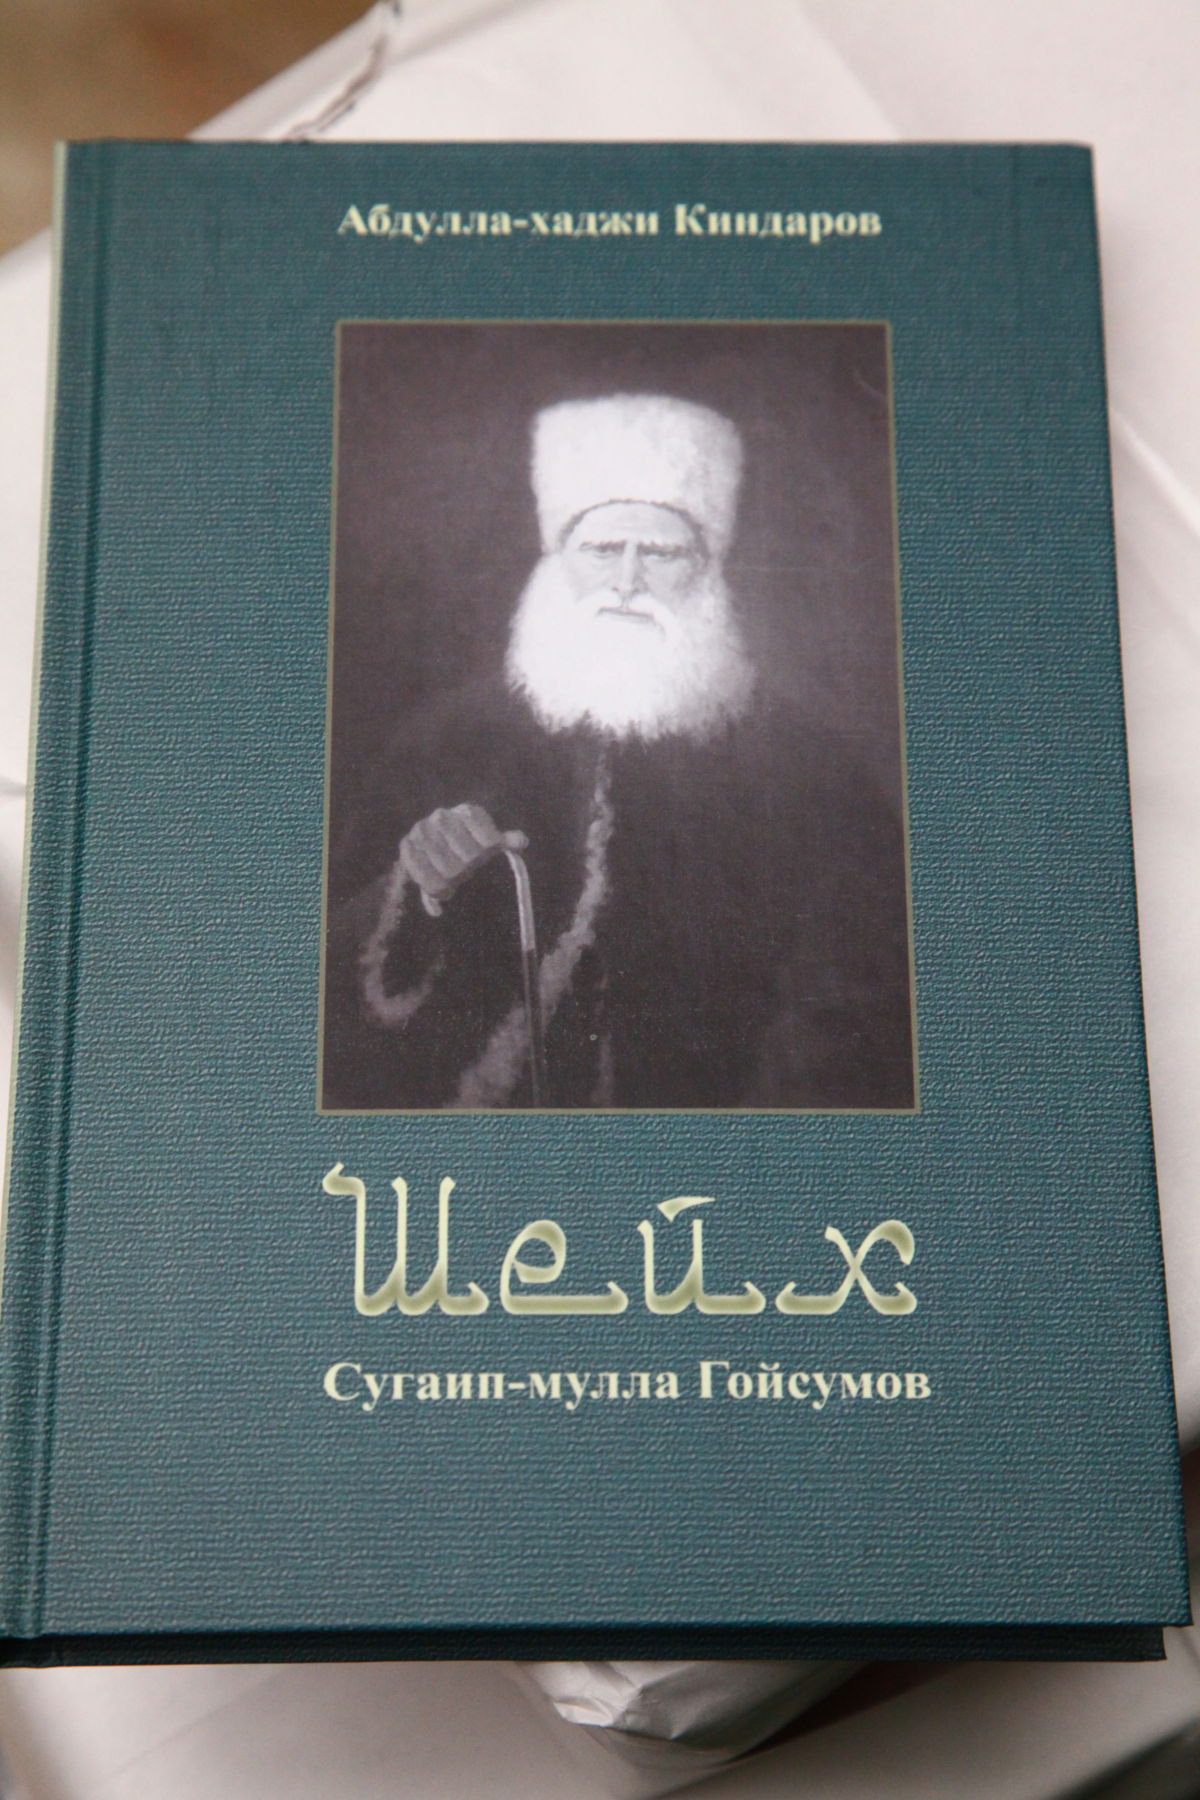 В Грозном презентовали книгу «Шейх Сугаип-мулла Гойсумов» | Информационное  агентство Грозный-Информ